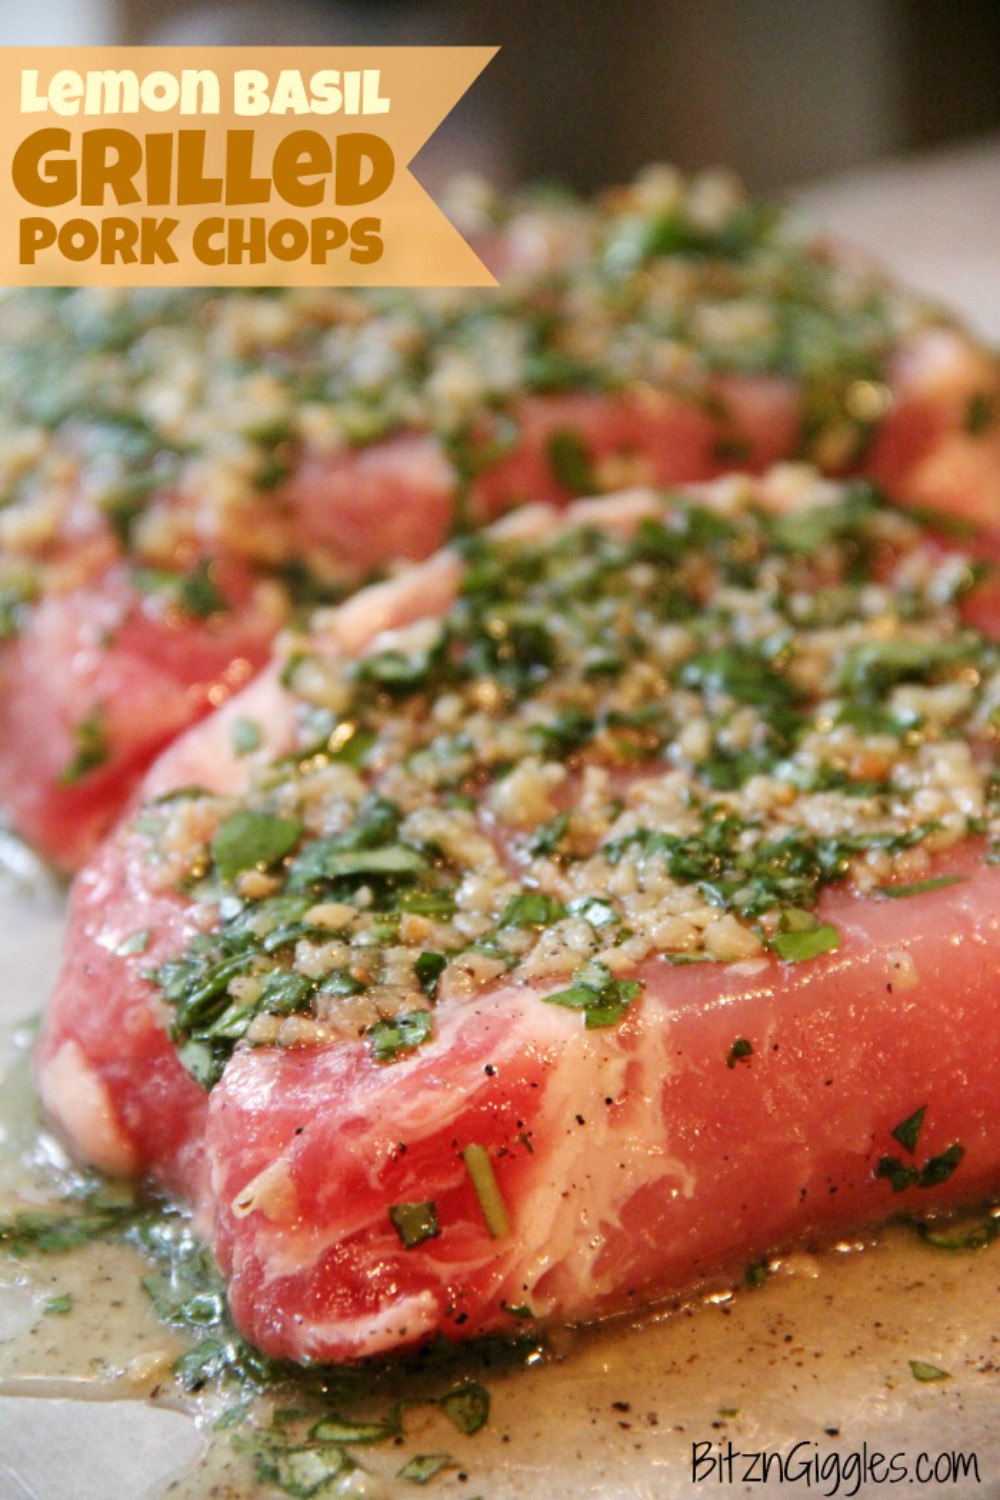 Lemon Basil Grilled Pork Chops – Lemon, garlic and basil-infused pork chops – perfect for summer grilling!